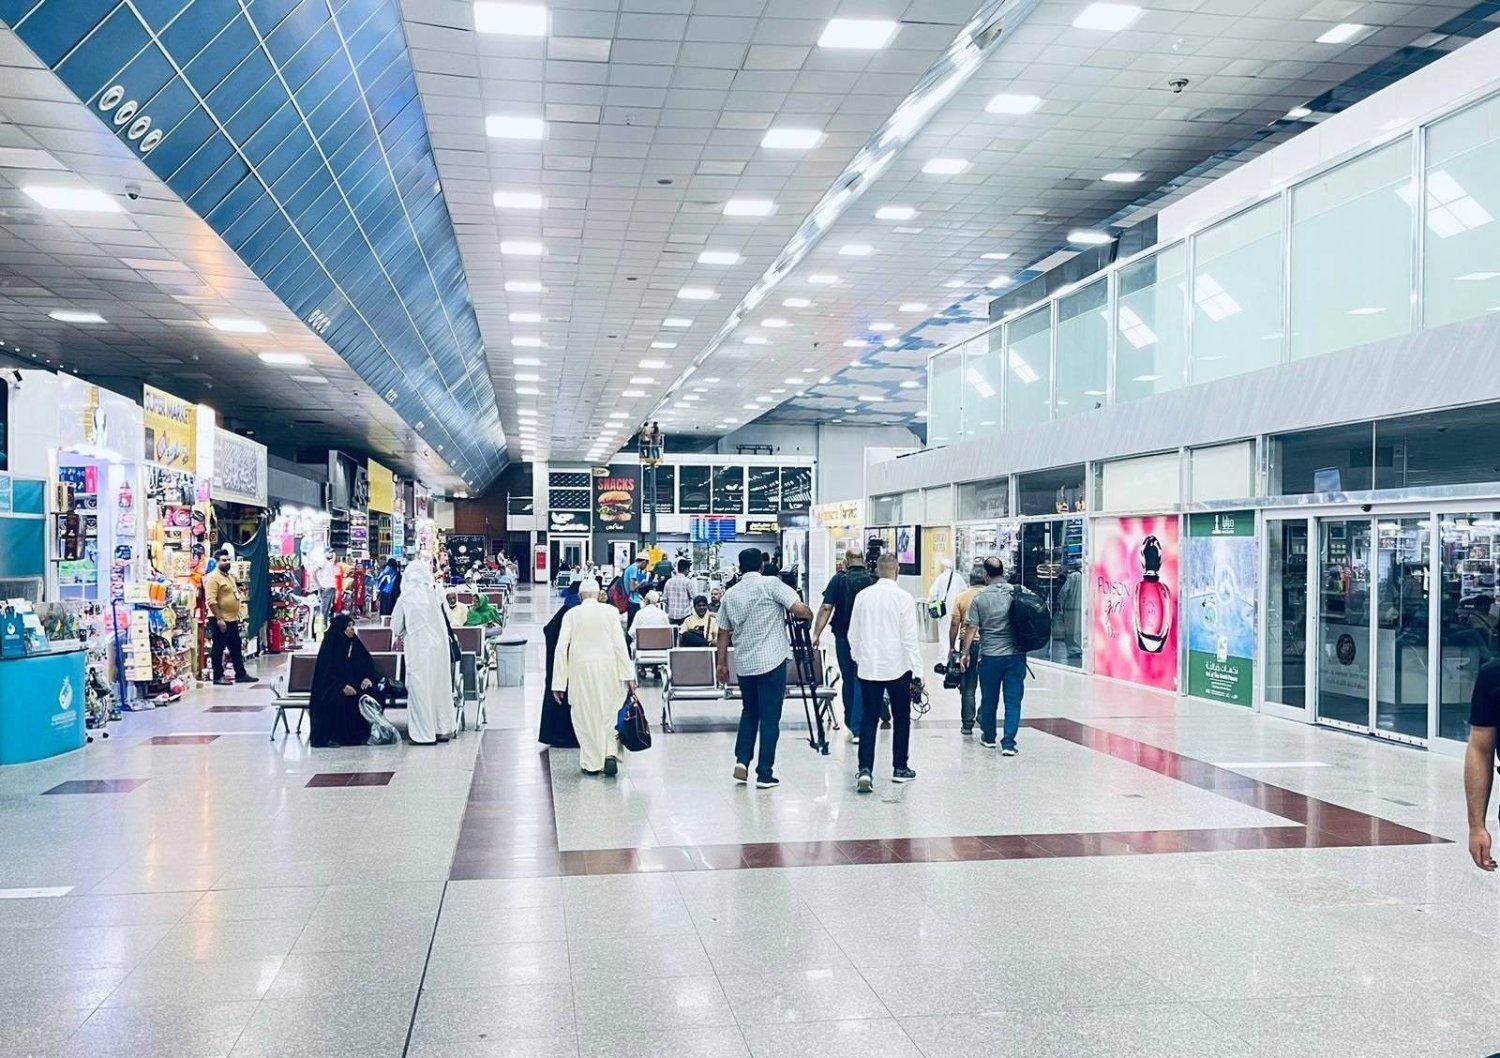 مطار النجف يبدأ استقبال رحلات مباشرة من الدمام مطلع يونيو المقبل (واع)